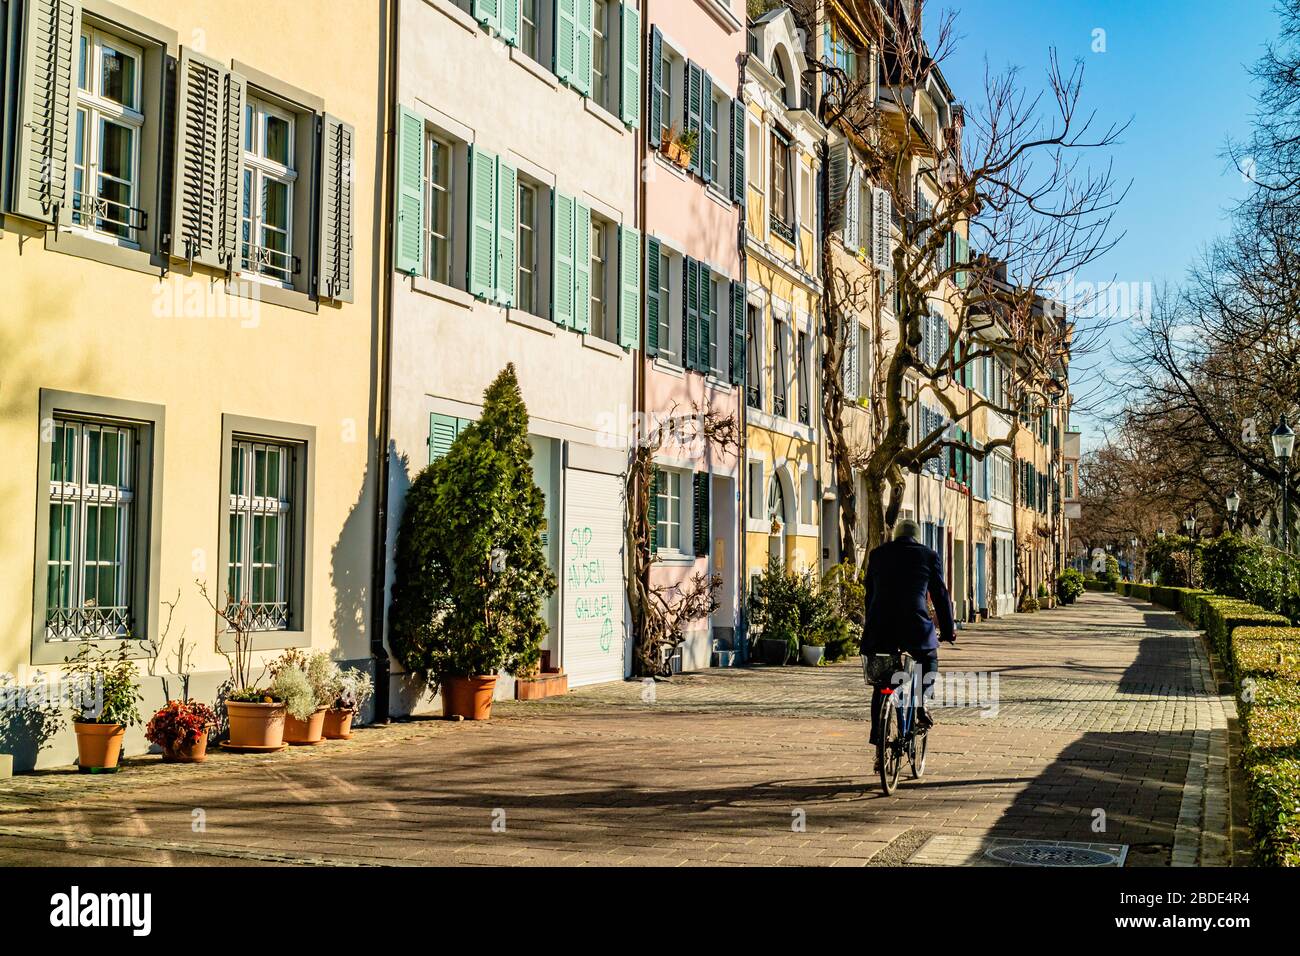 Eine Person, die eine ruhige Wohnstraße im Stadtzentrum von Basel, Schweiz, entlang radelt. Februar 2020. Stockfoto